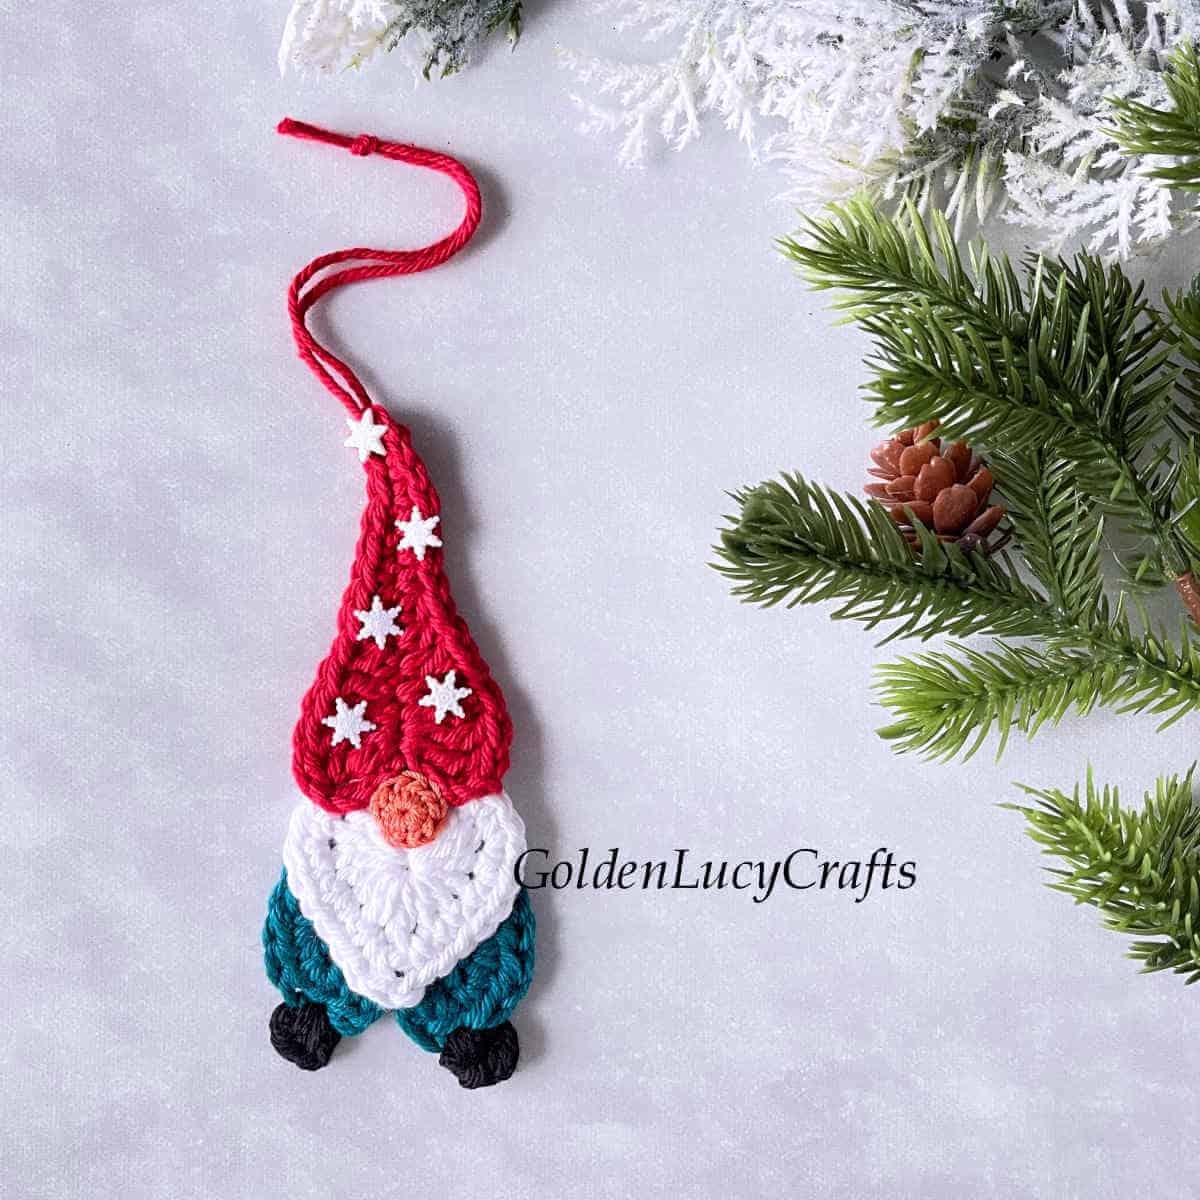 Crocheted heart gnome ornament.